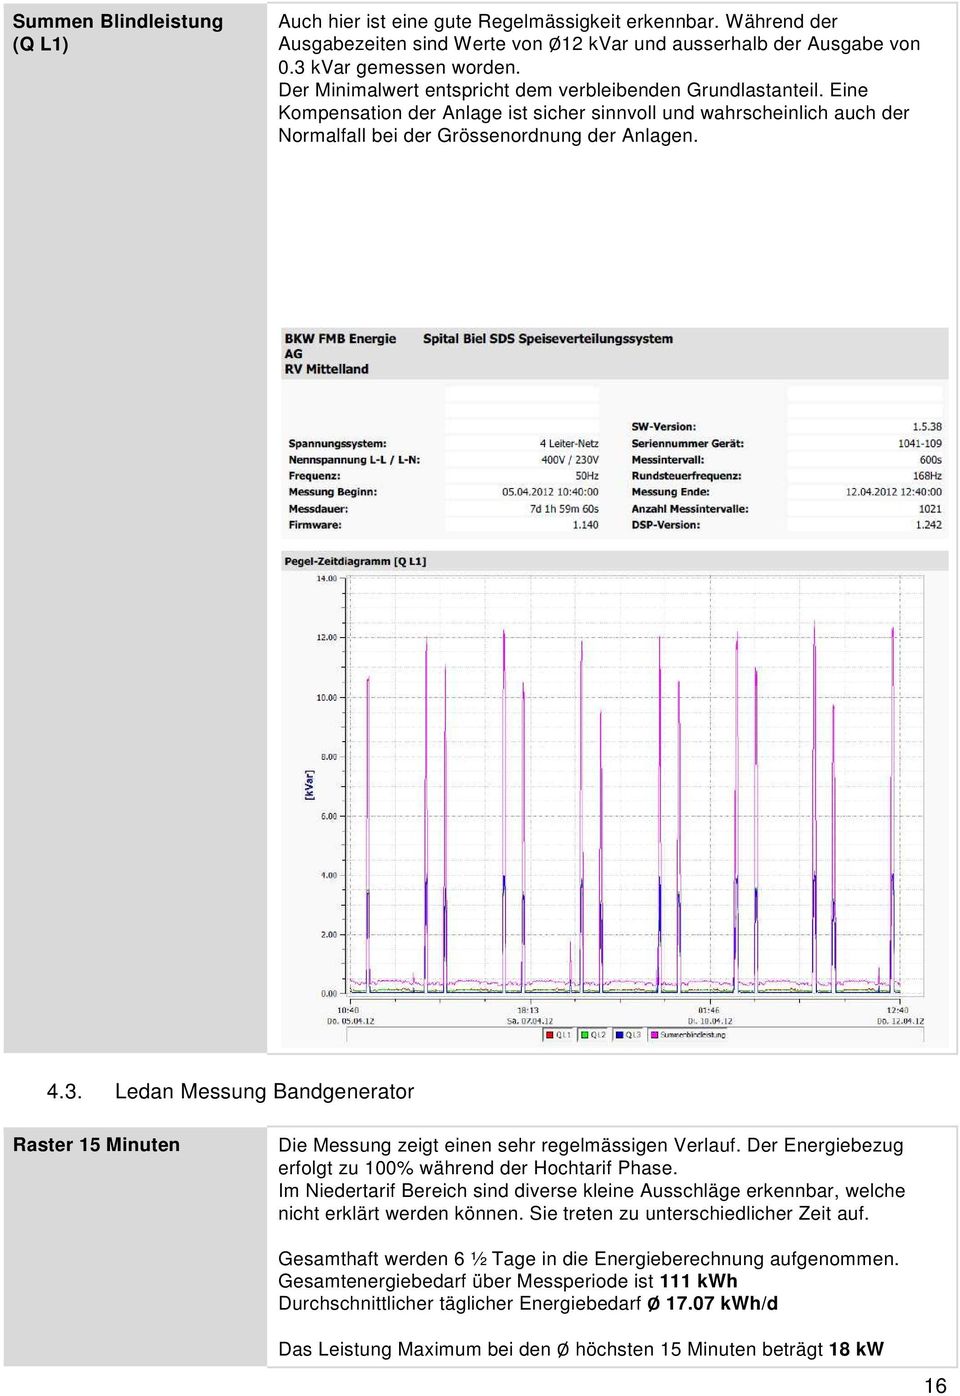 Ledan Messung Bandgenerator Raster 15 Minuten Die Messung zeigt einen sehr regelmässigen Verlauf. Der Energiebezug erfolgt zu 100% während der Hochtarif Phase.